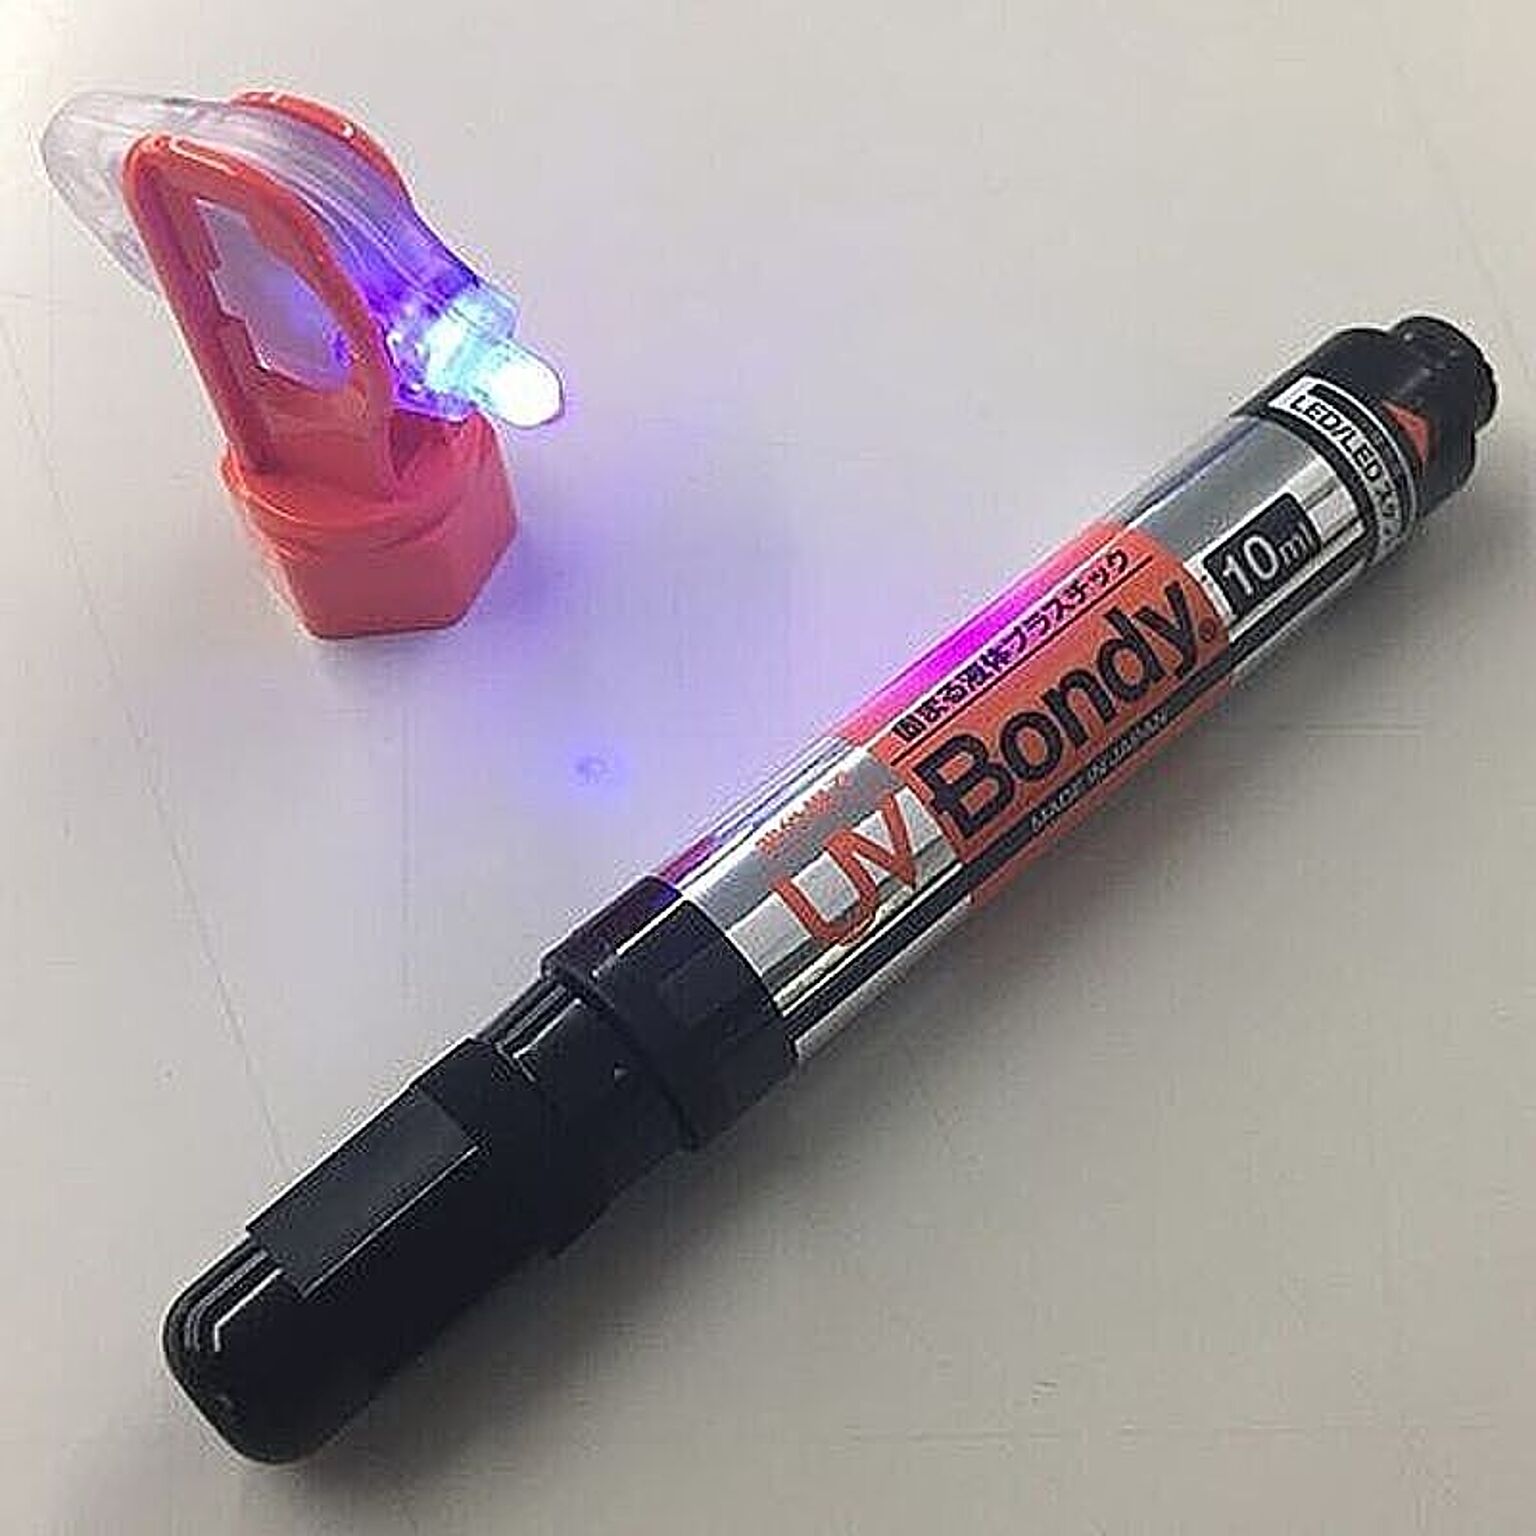 UV Bondy(ユーブイ ボンディ)液体プラスチック 大容量 接着剤 溶接機 スターターキット オリエント・エントプライズ UB-S10 管理No.  4560191329053 通販 RoomClipショッピング